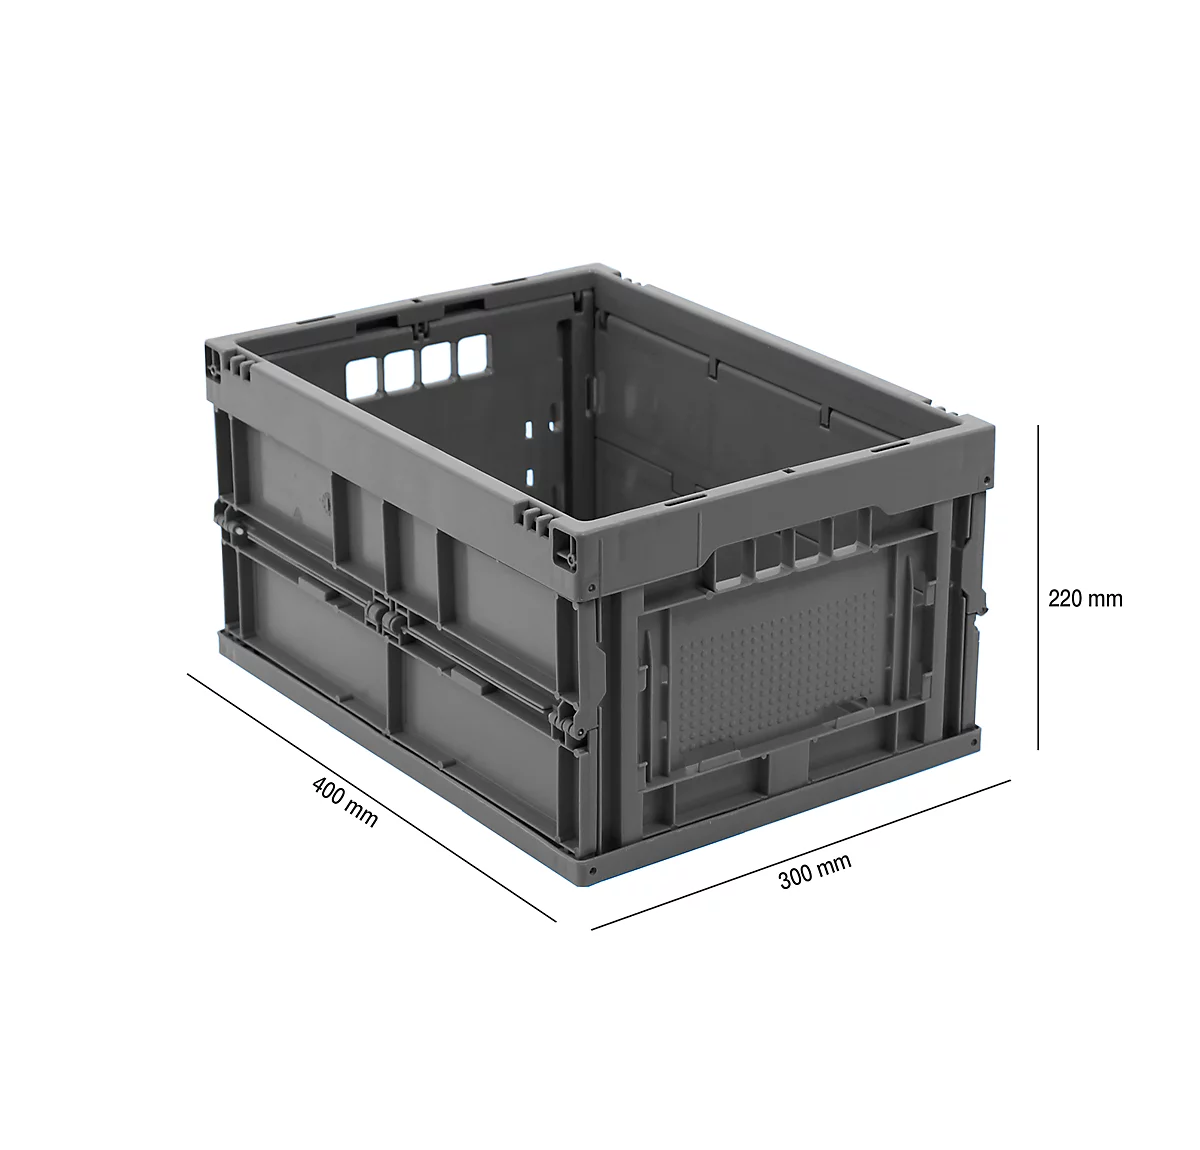 Caja plegable dimensiones norma europea 4322, sin tapa, para almacenamiento y transporte de retorno, capacidad 20,3 l, gris